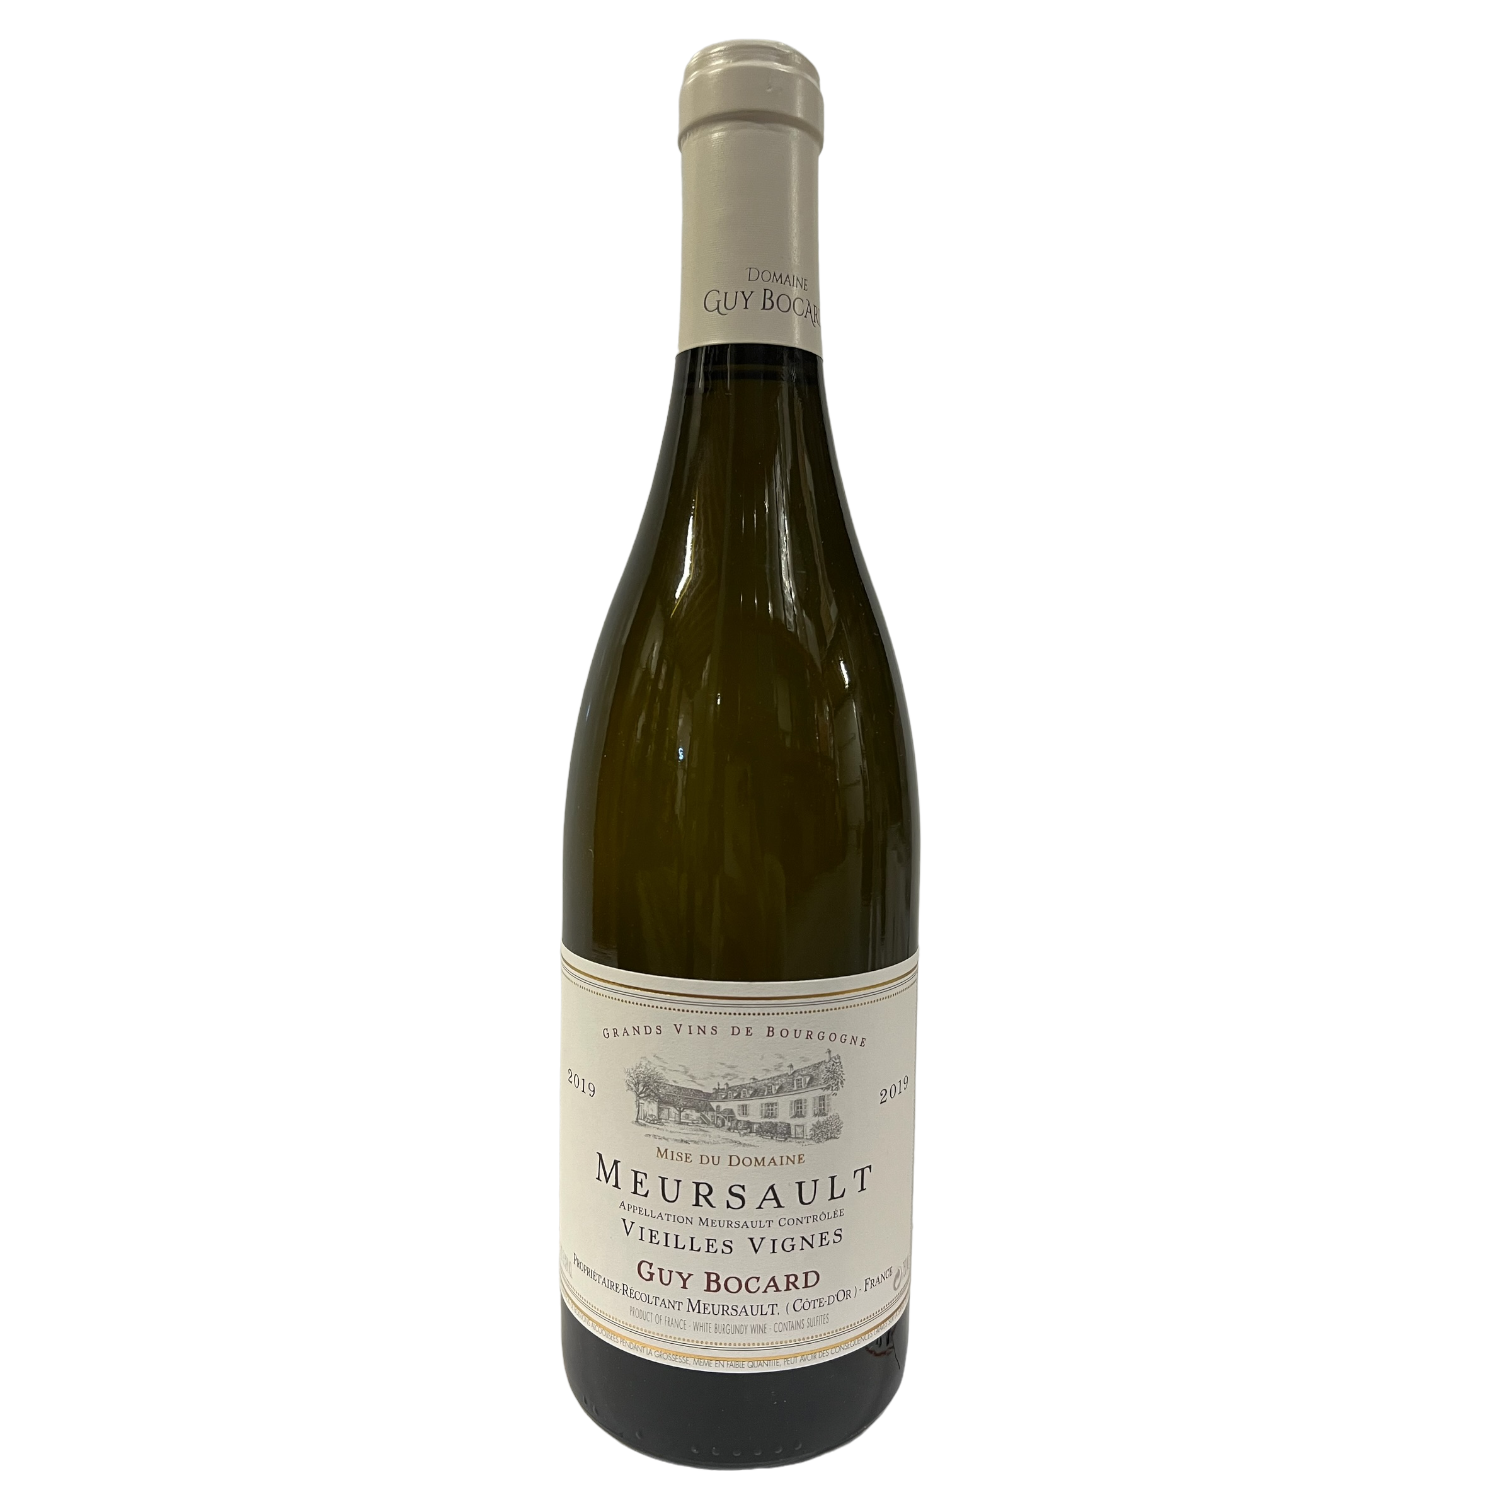 Domaine Guy Bocard Meursault “Vieilles Vignes”